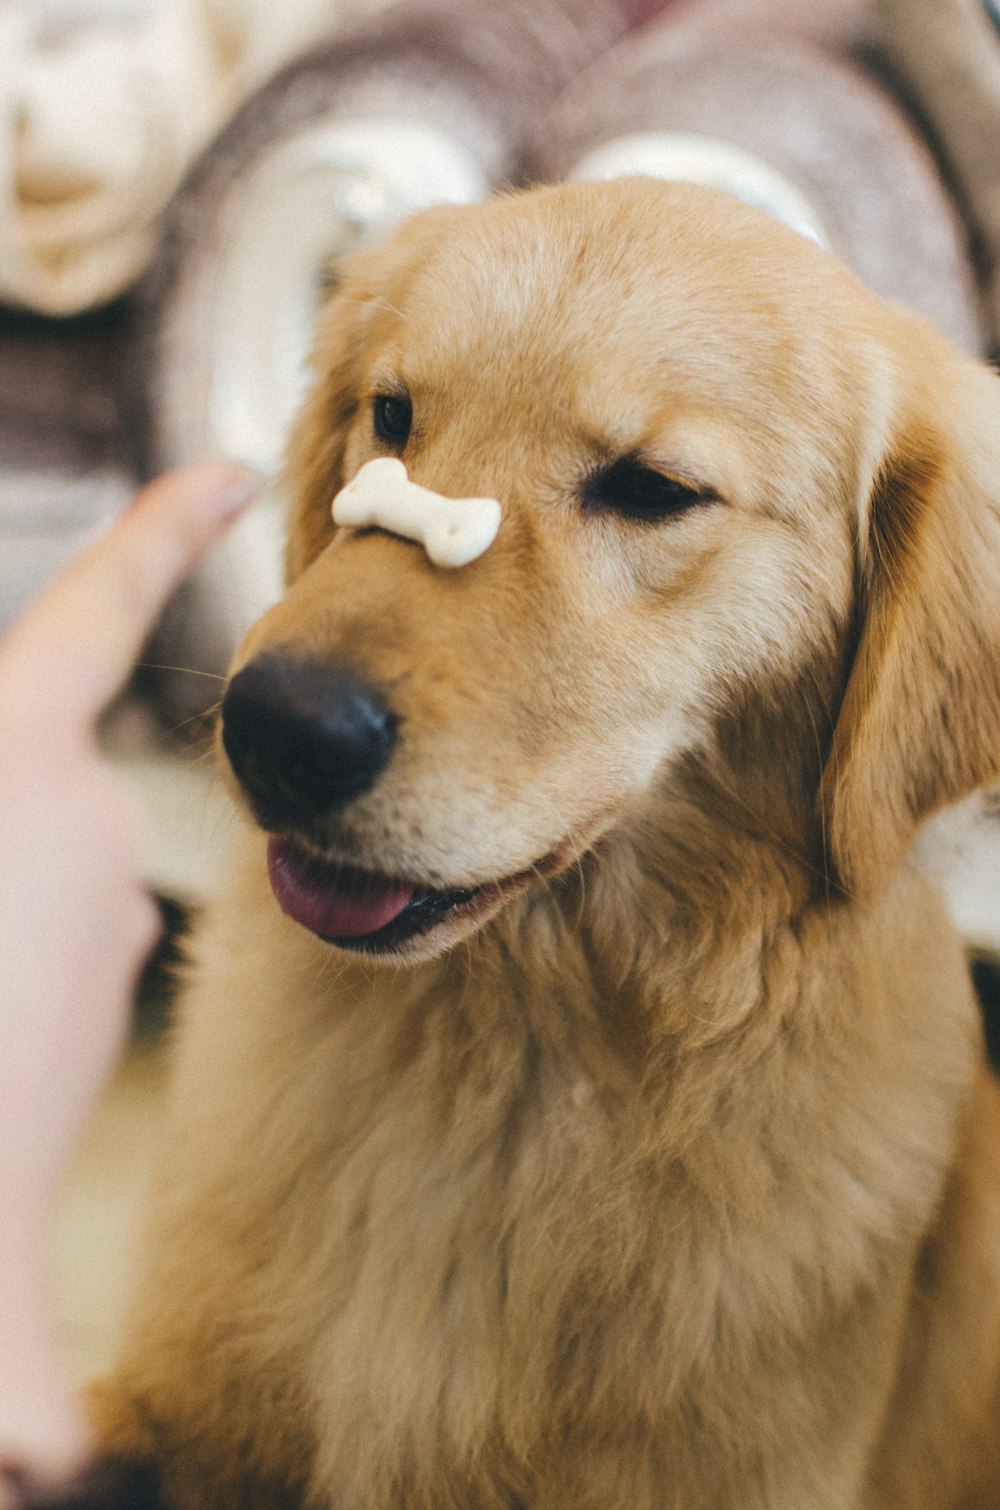 Ausgewachsener Golden Retriever mit Keksknochen auf der Nase